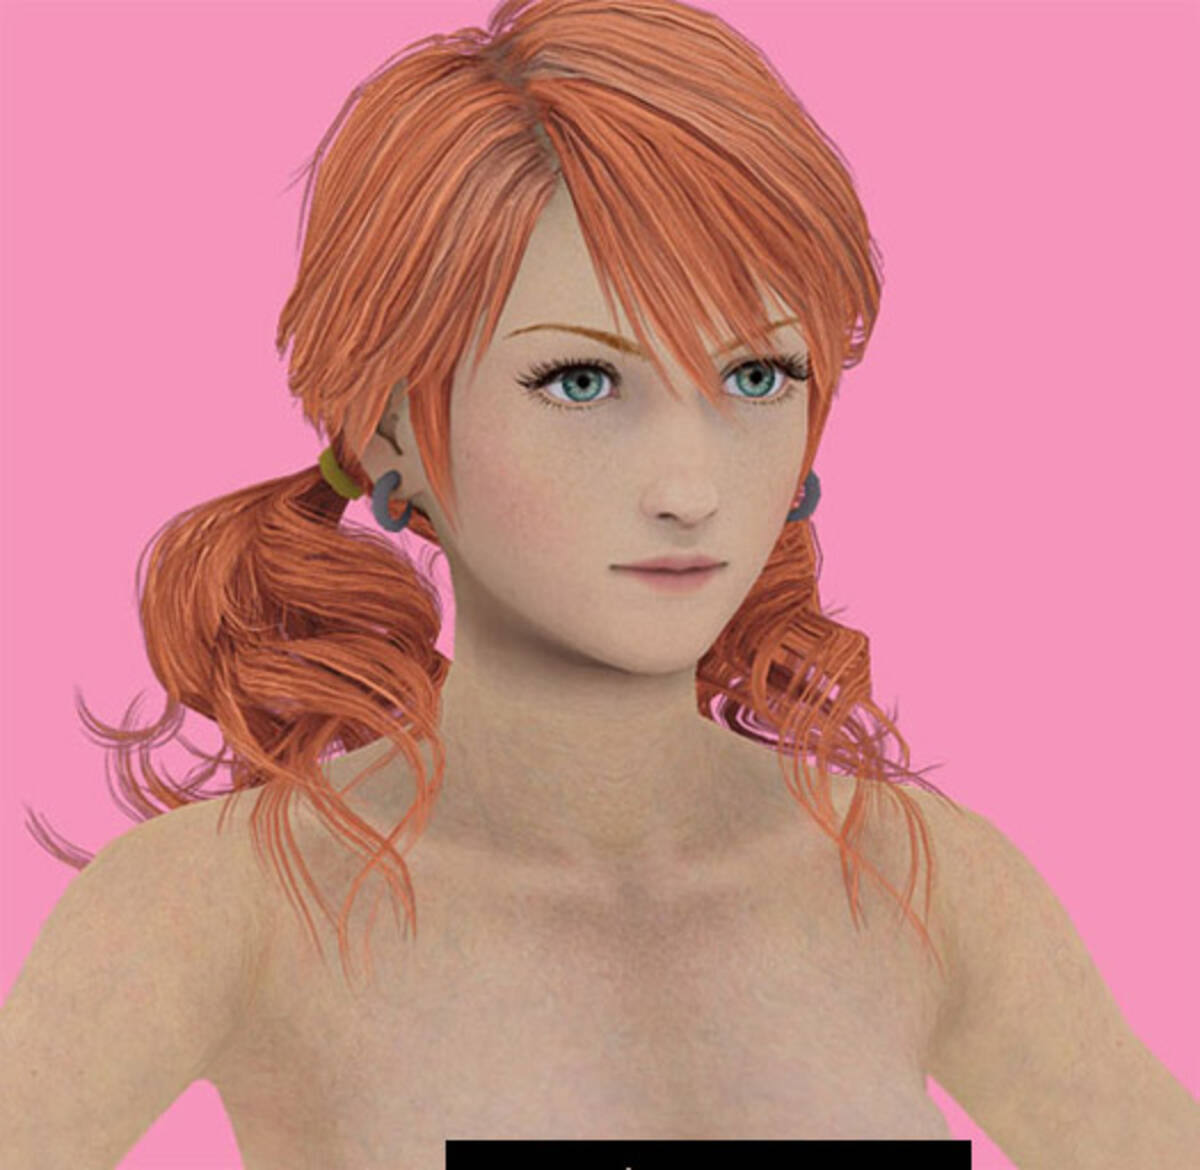 Final Fantasy Xiii に美少女キャラの乳首露出データ 10年1月日 エキサイトニュース 2 2